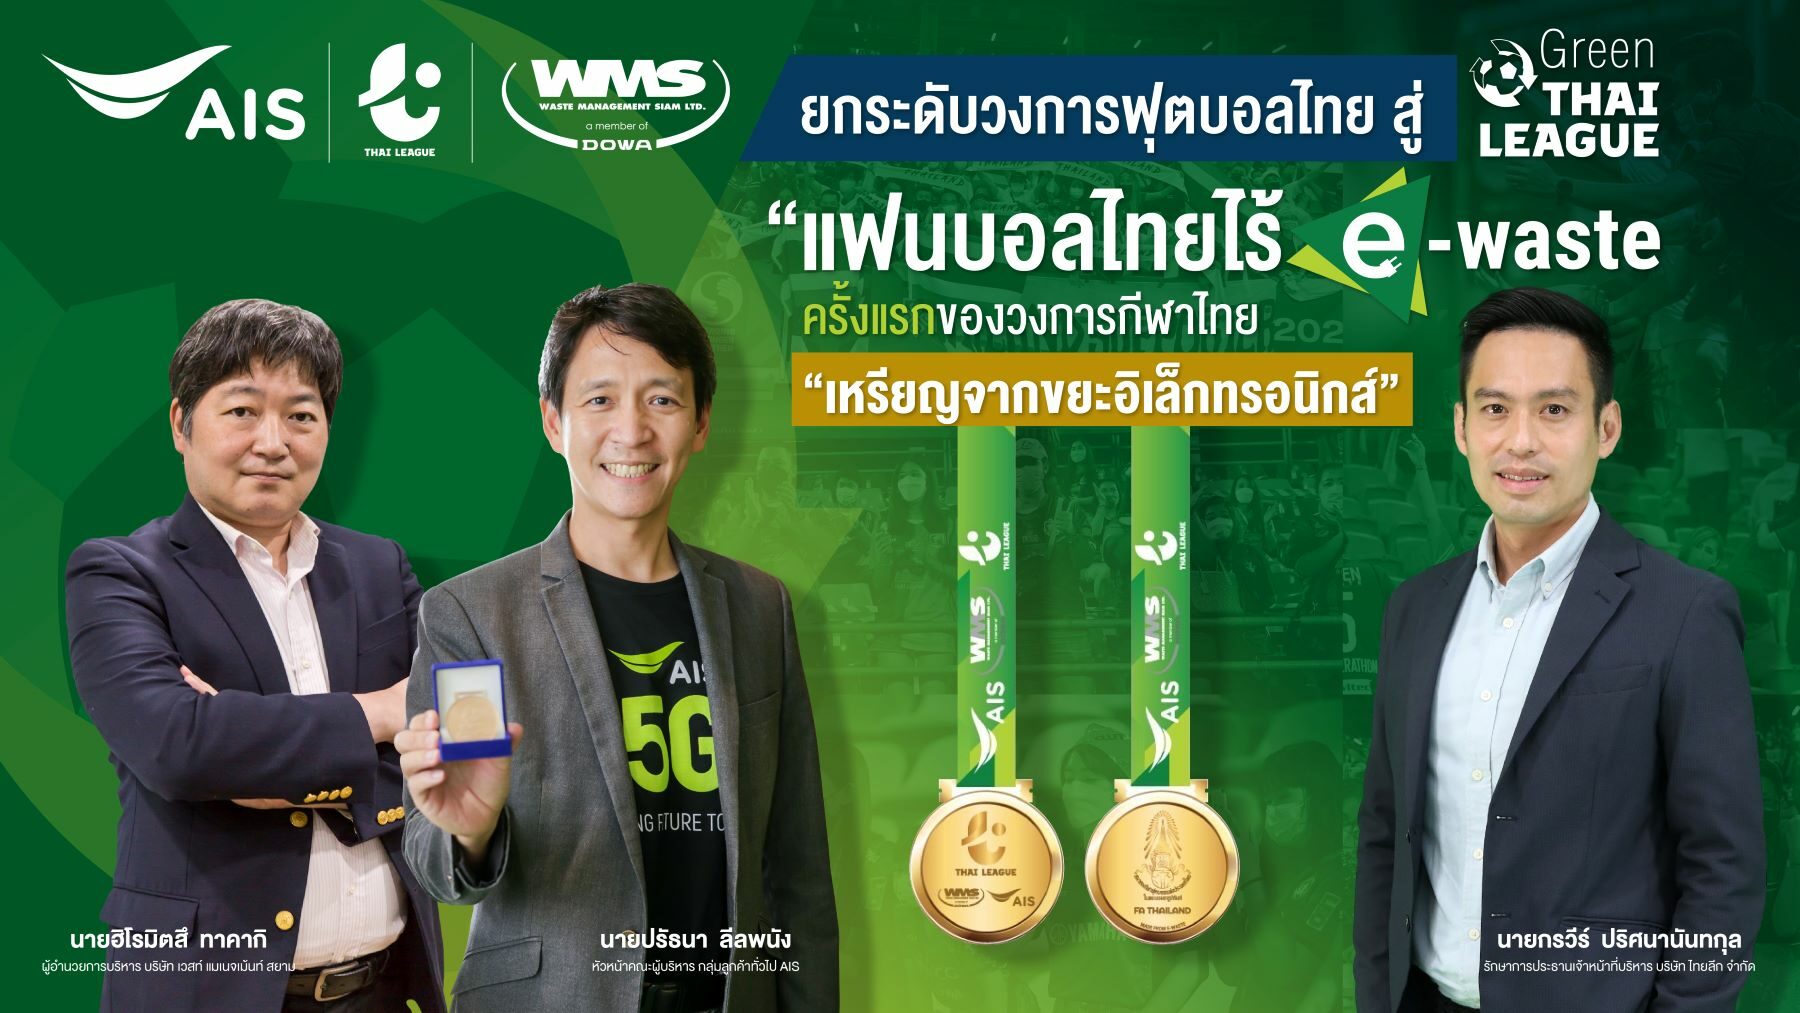 AIS - WMS ผนึกกำลัง ไทยลีก ยกระดับวงการฟุตบอลไทย สู่ Green ไทยลีก เพื่อสิ่งแวดล้อม